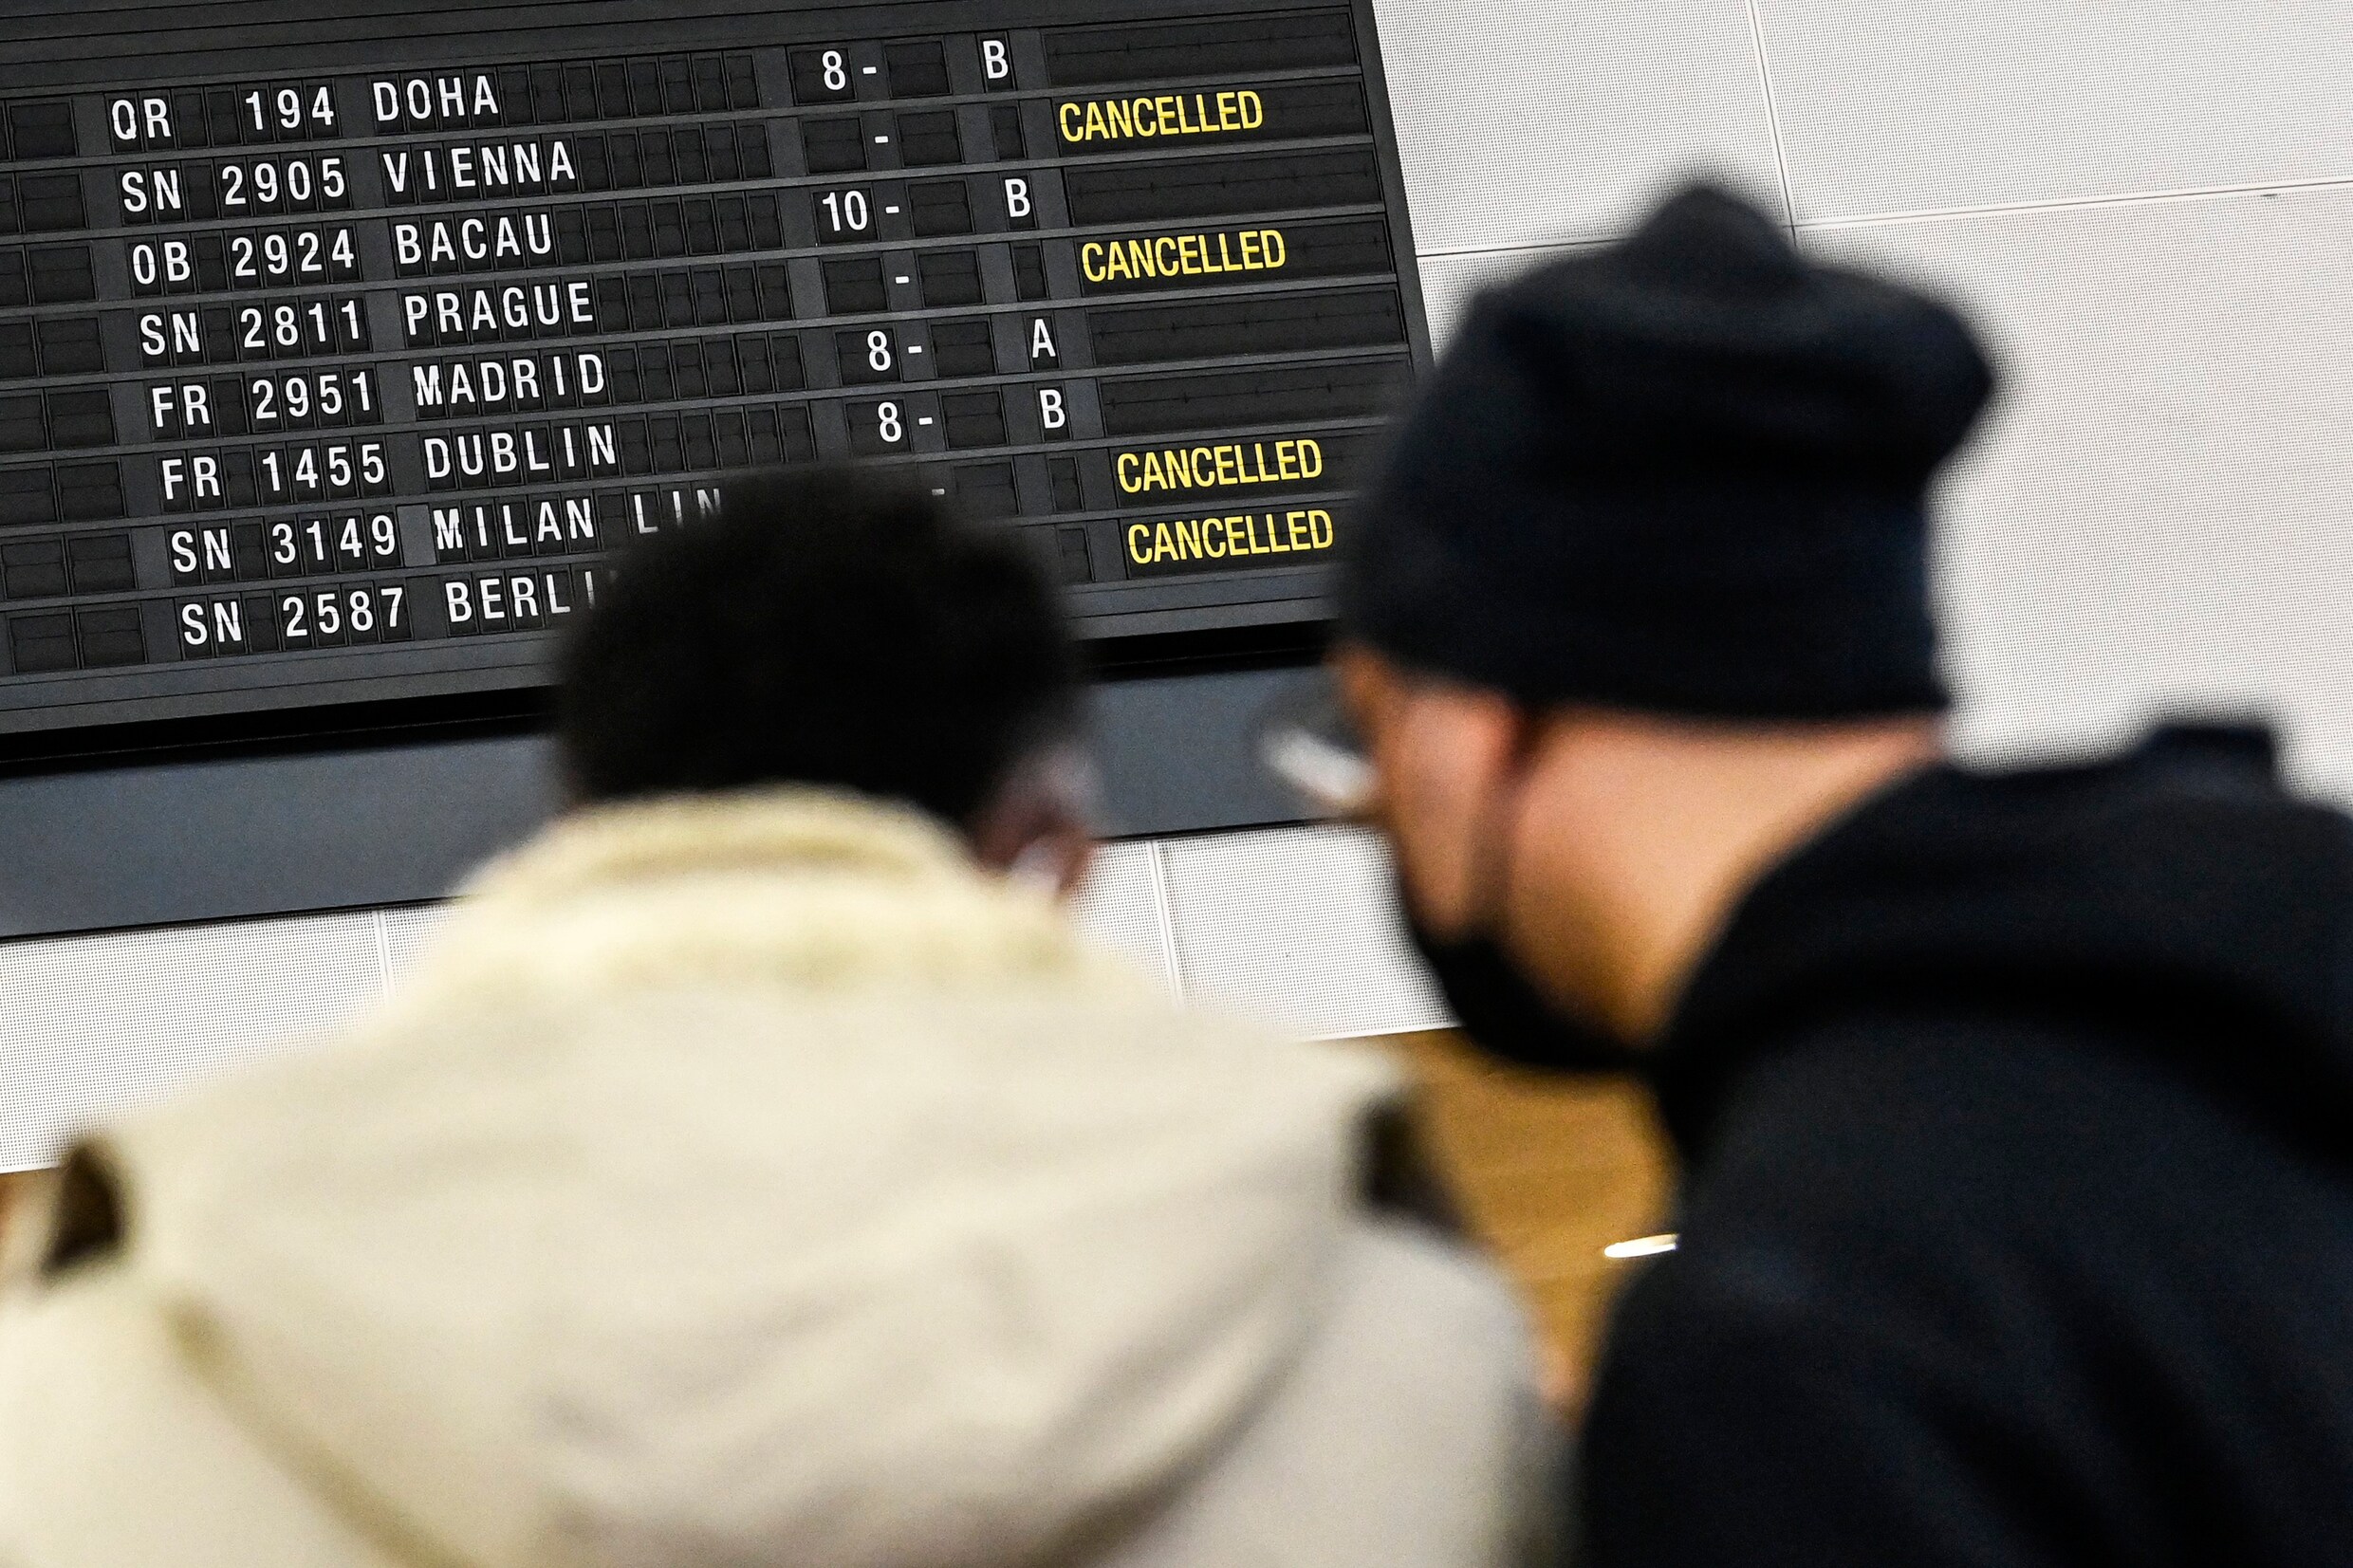 Brussels Airlines annuleert 315 vluchten door staking, 40.000 passagiers getroffen